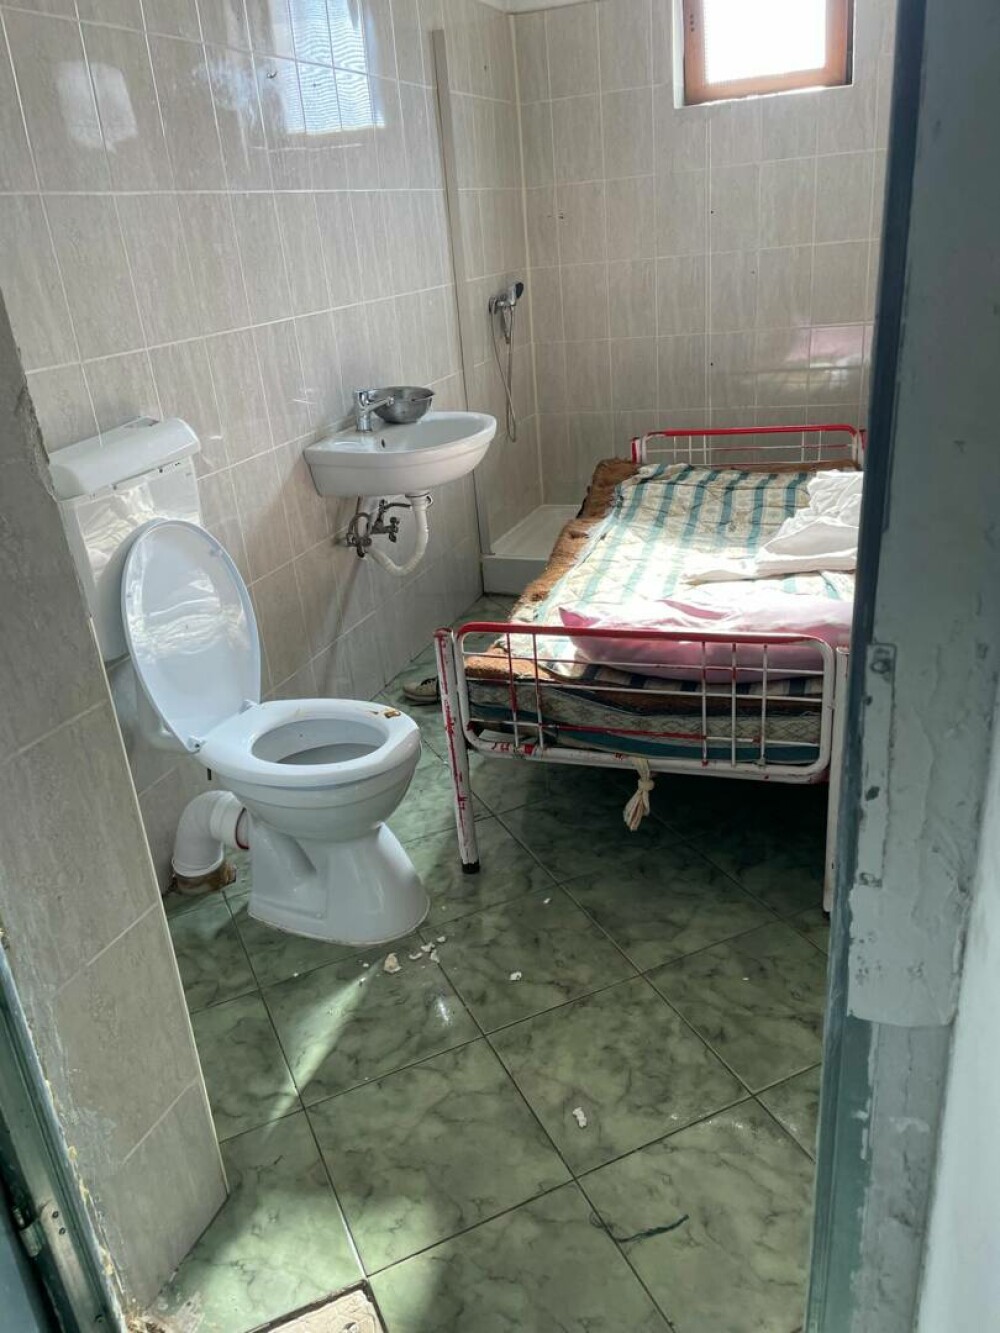 Imagini șocante dintr-un nou „azil al groazei”. 7 persoane, ținute în condiții insalubre în subsolul unui centru din Mureș - Imaginea 4